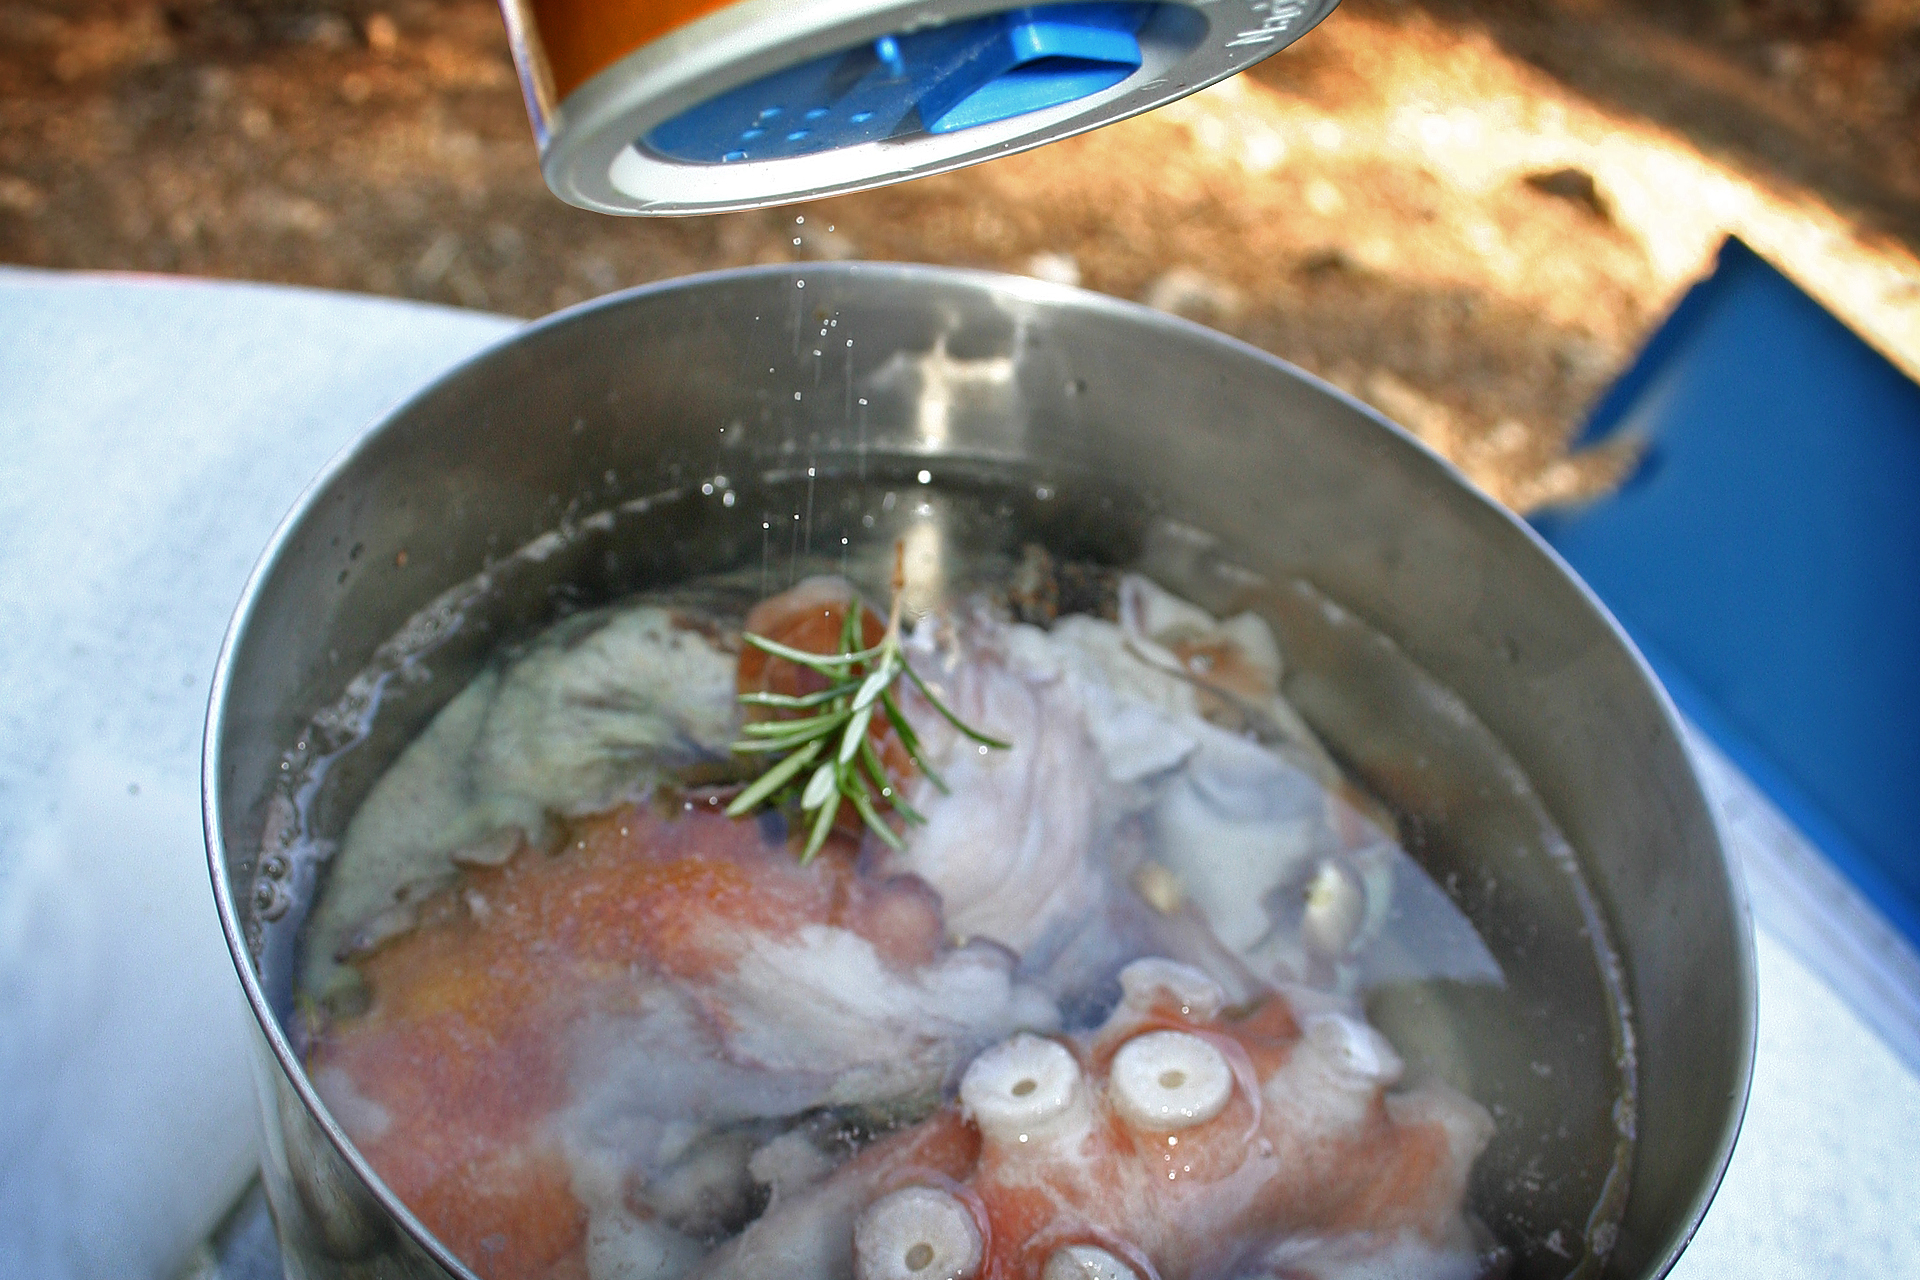 Kraken, Pulpo, Oktopus kochen